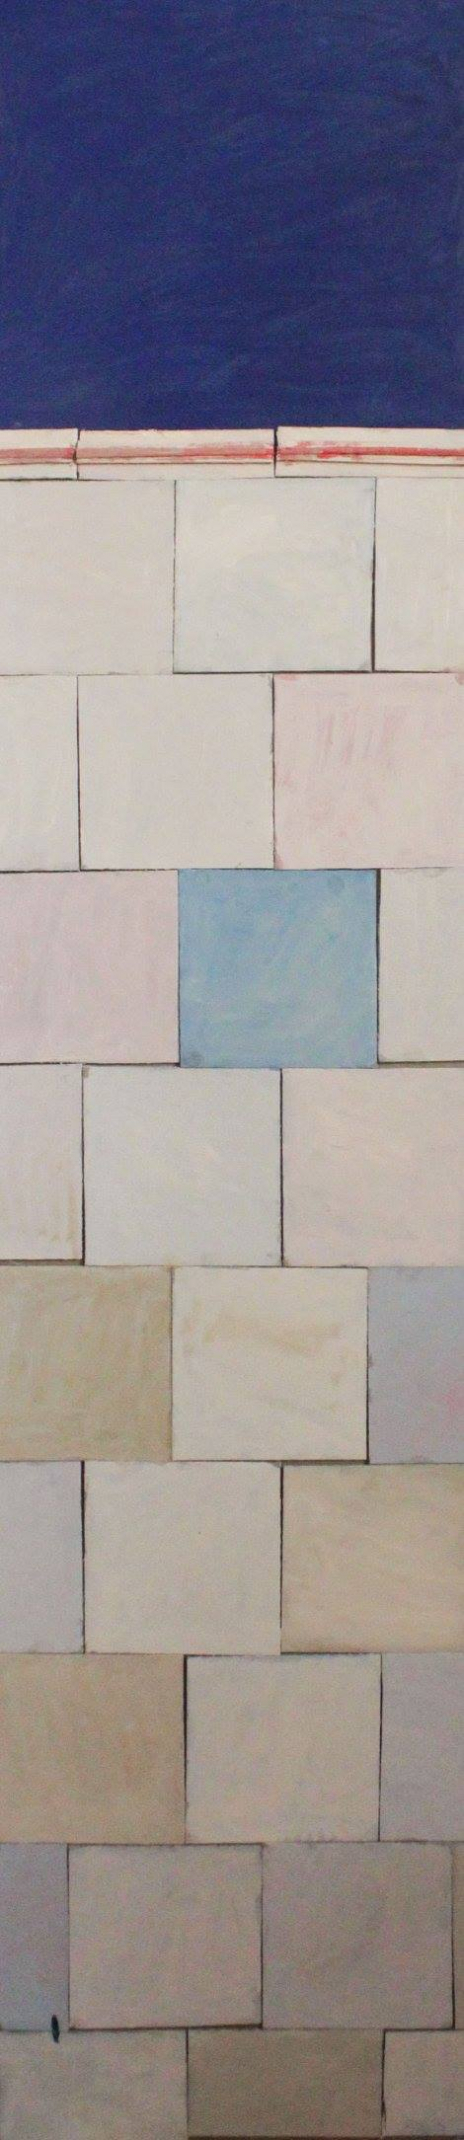 Плитка с синим верхом из серии павильон "Труд и отдых"